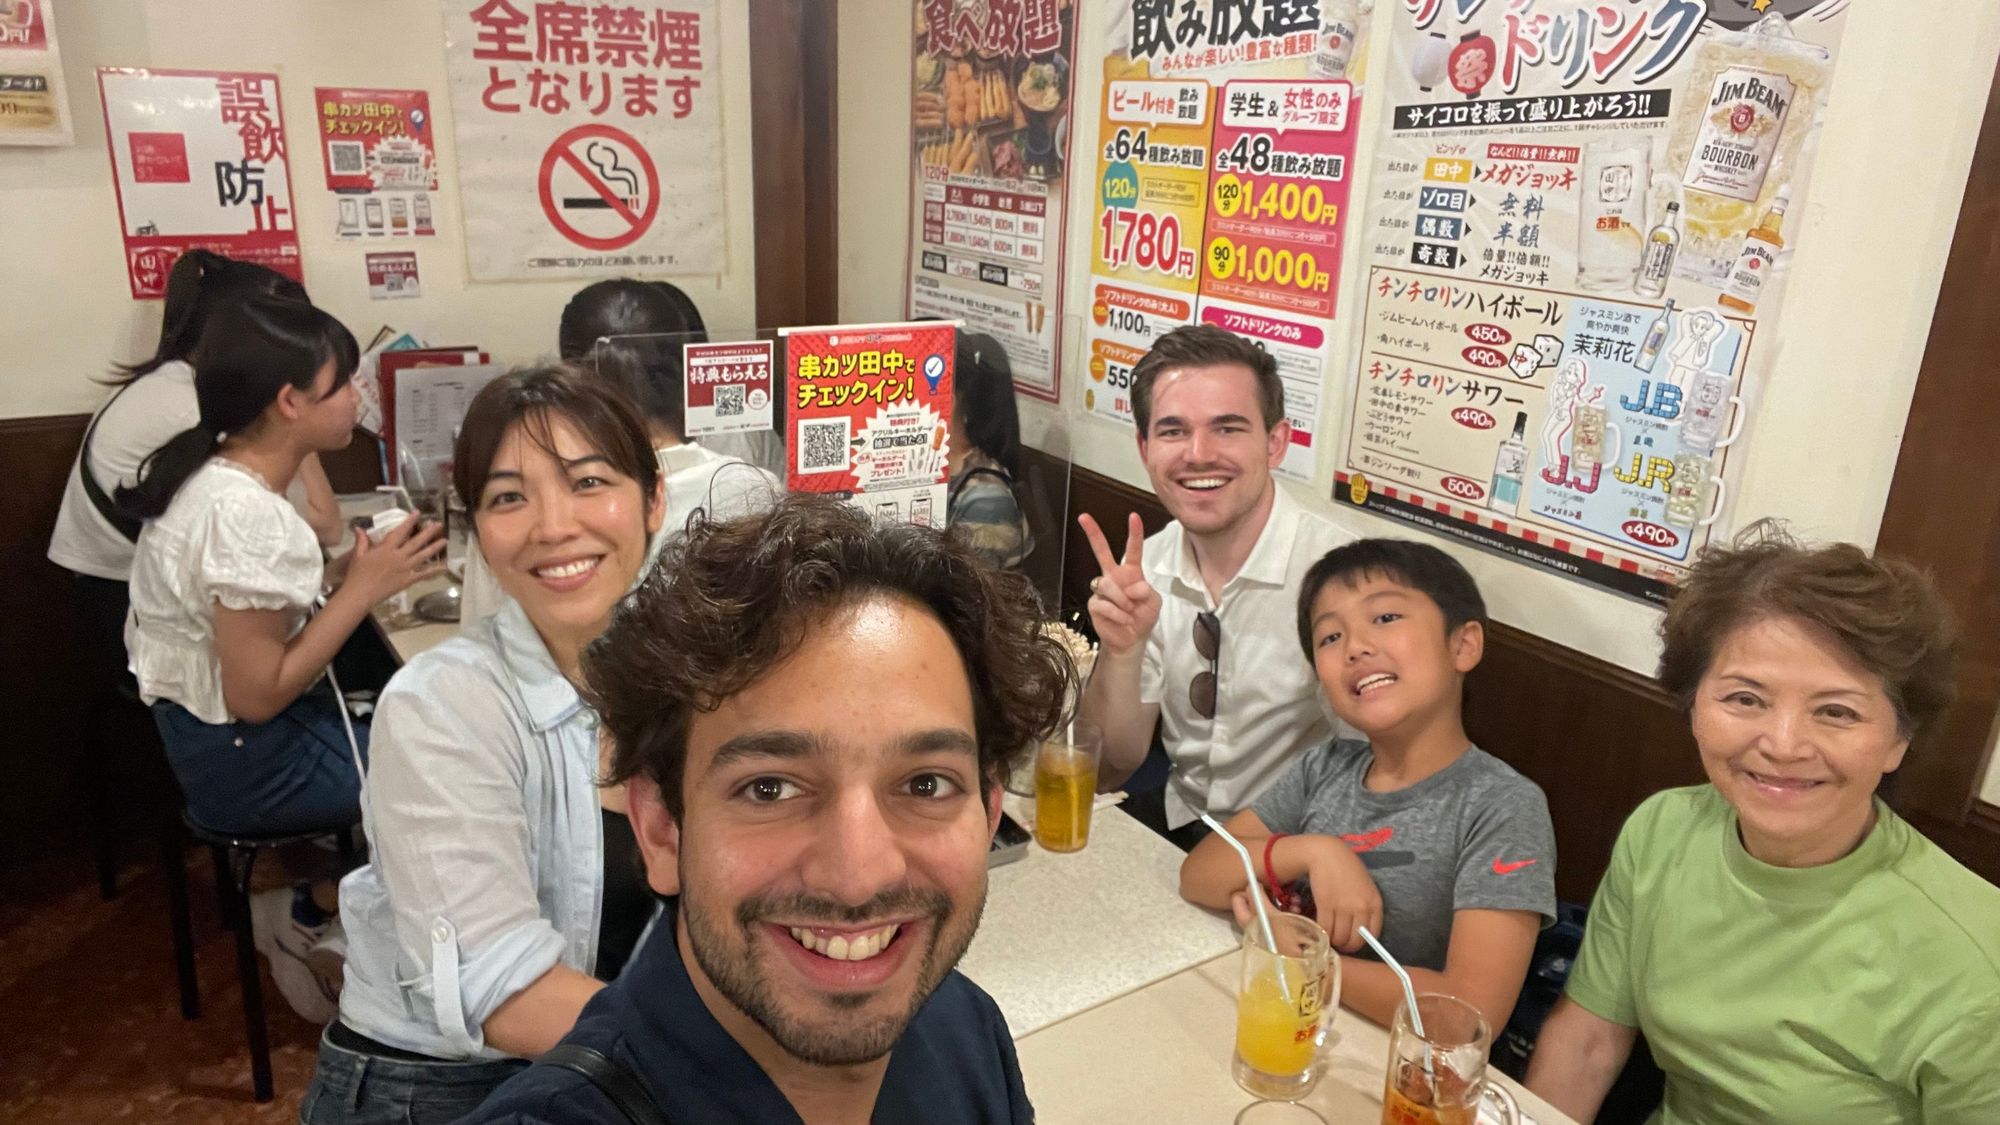 Brad in Japan: Birthday Weekend!